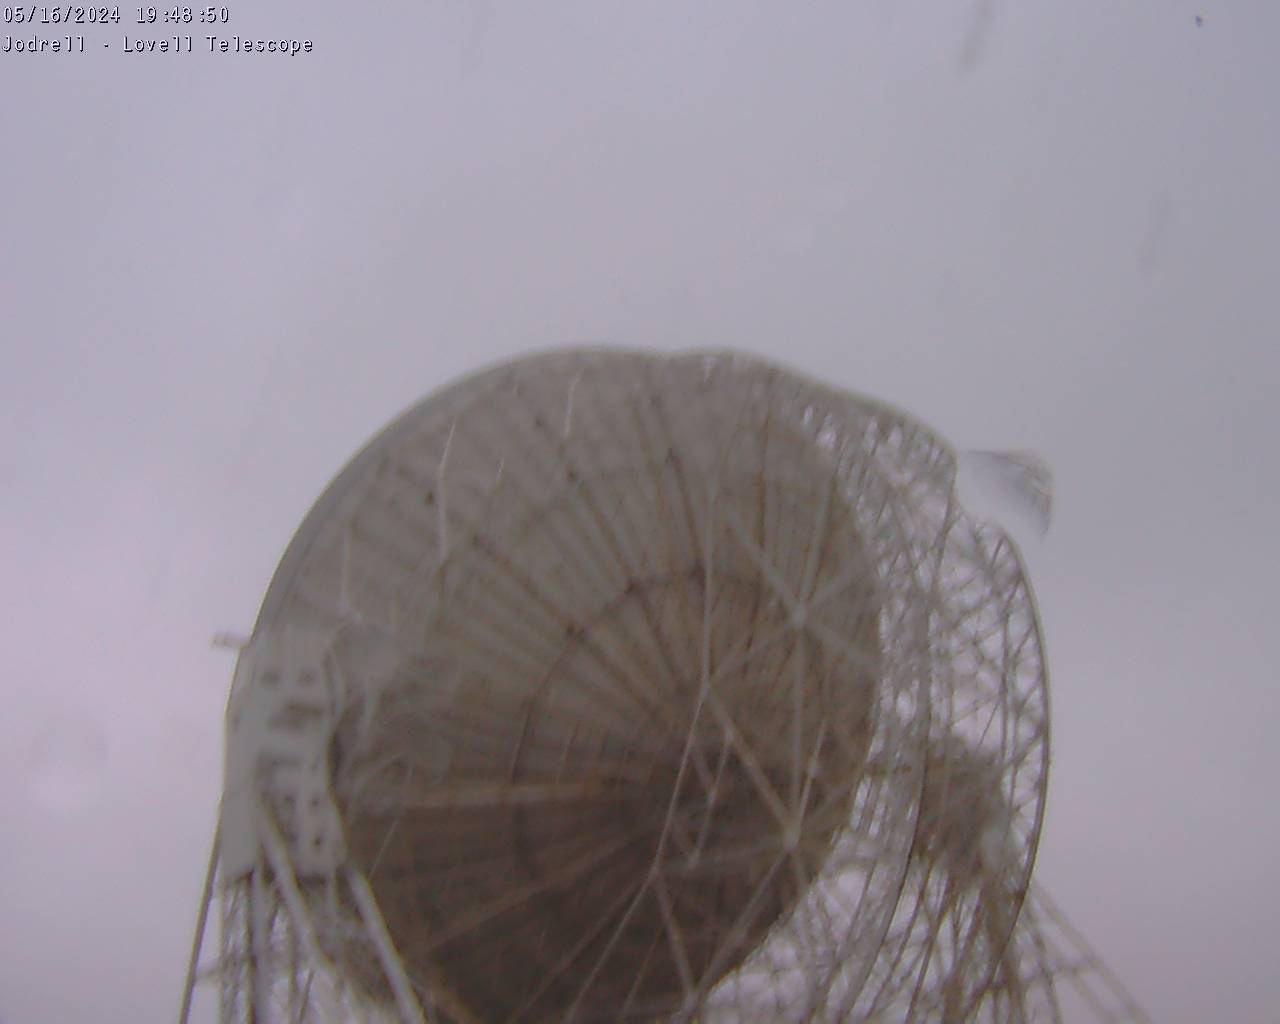 Observatorio Jodrell Bank Sáb. 19:49